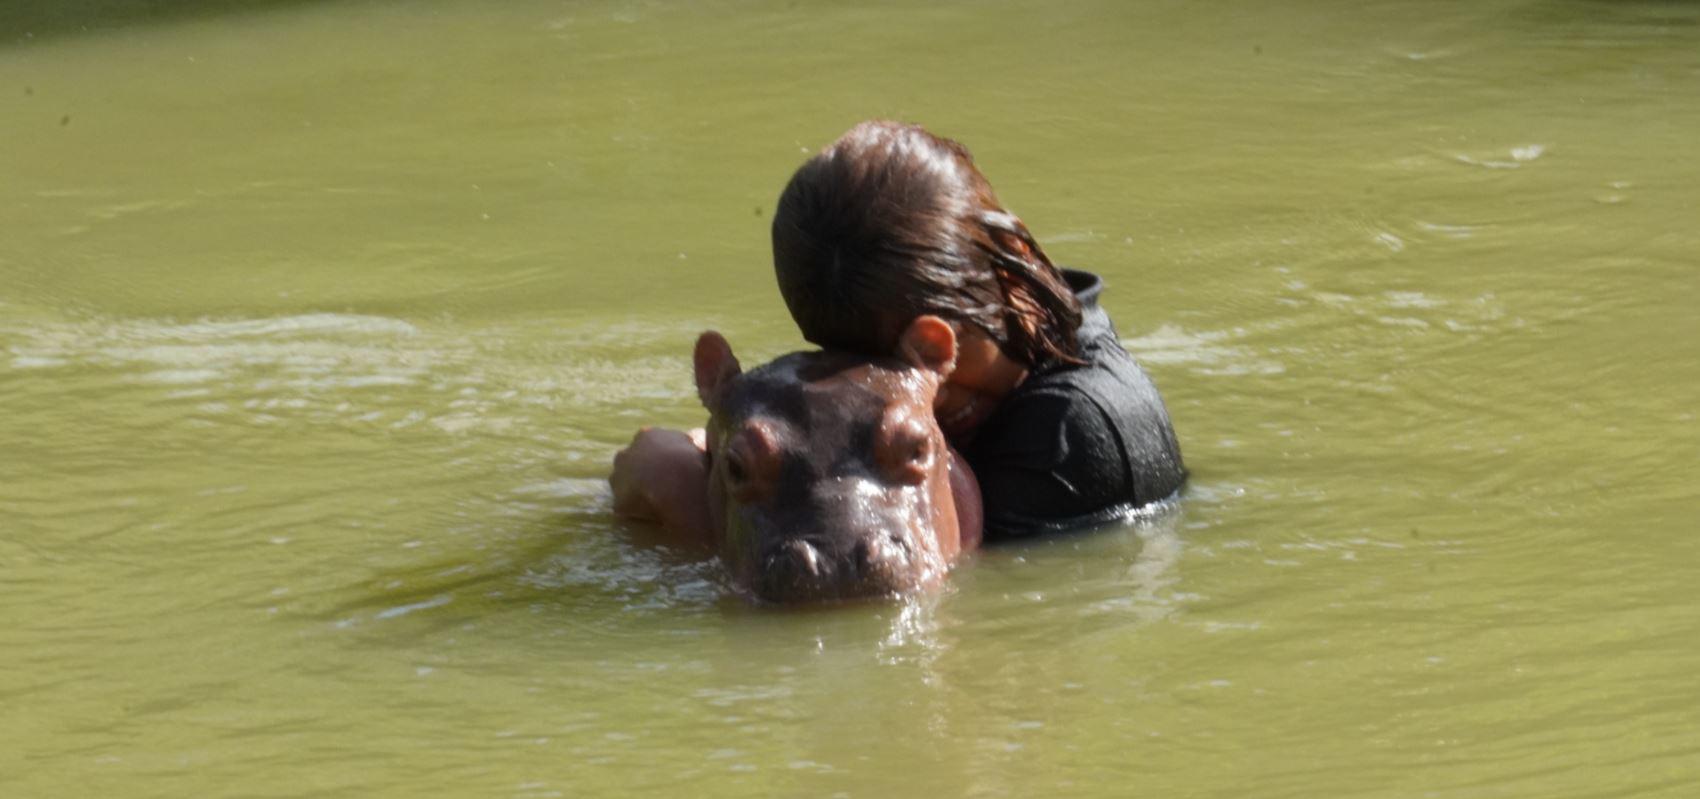 $!La hija del traficante y la pequeña hembra de hipopótamo pasan largas jornadas de baño en un lago cercano a la casa.